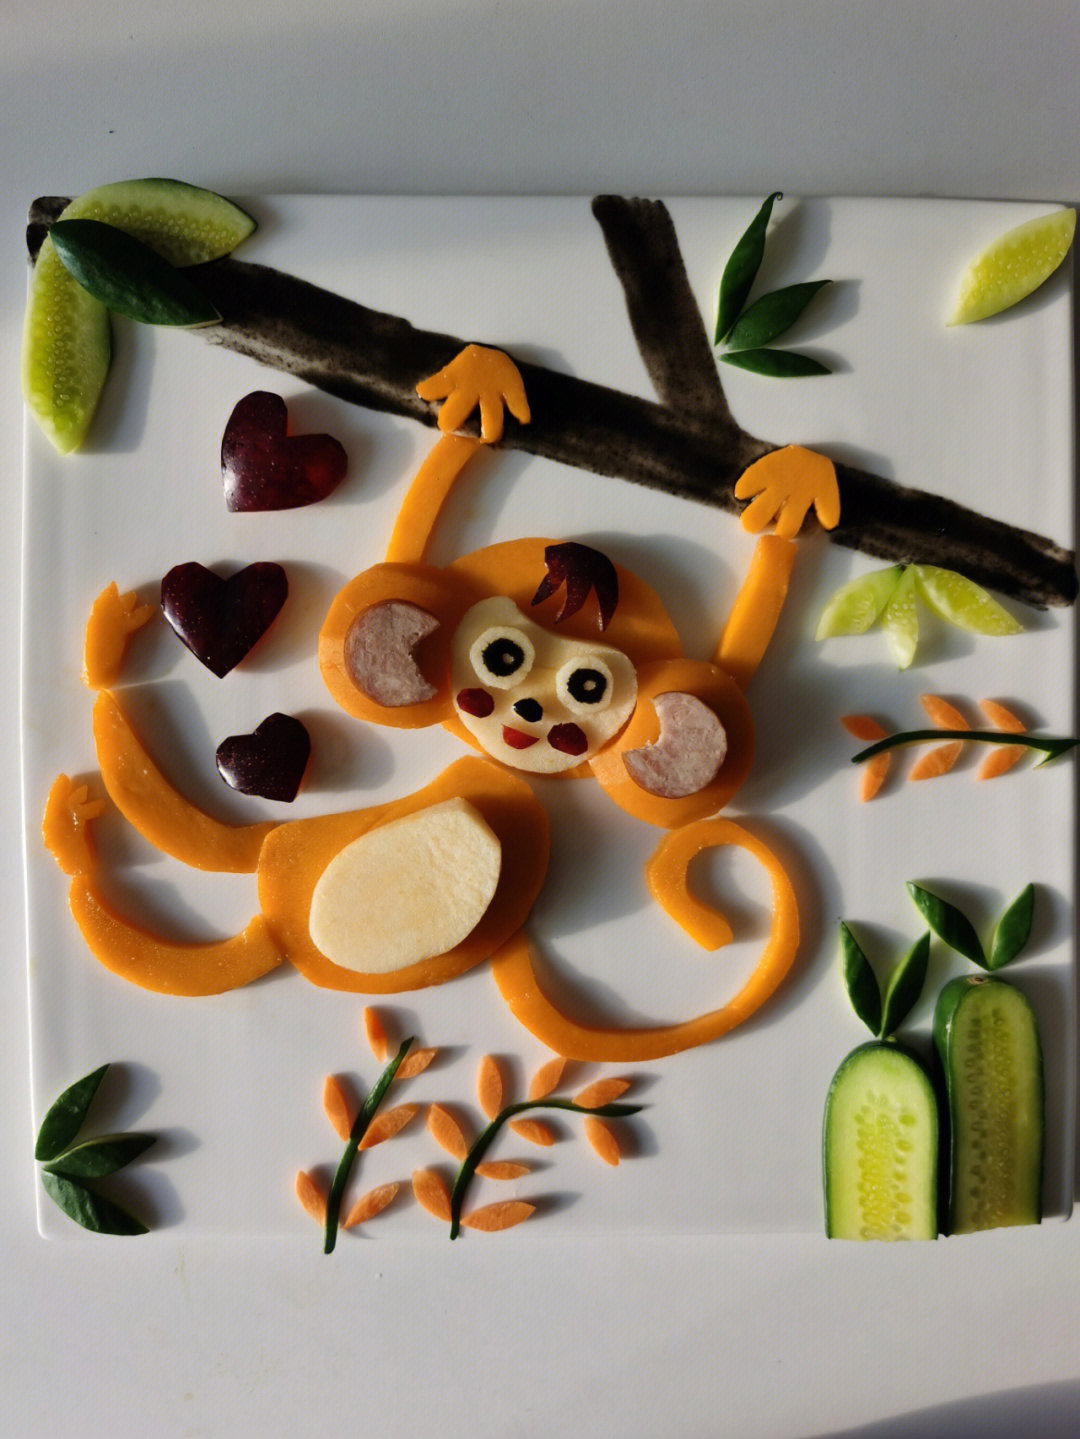 猴子水果拼盘图片